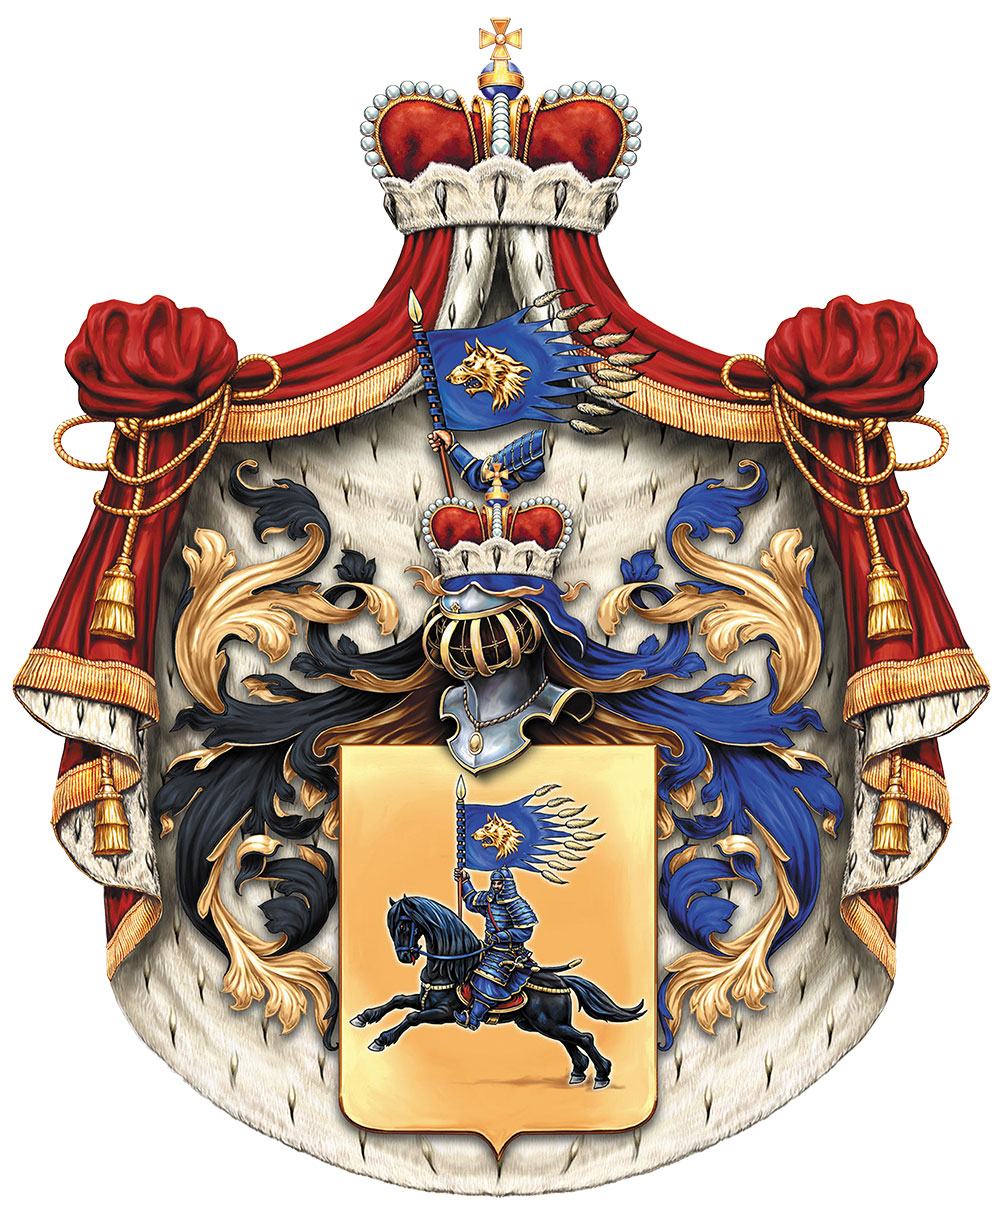 Сімейний герб сучасного аристократа